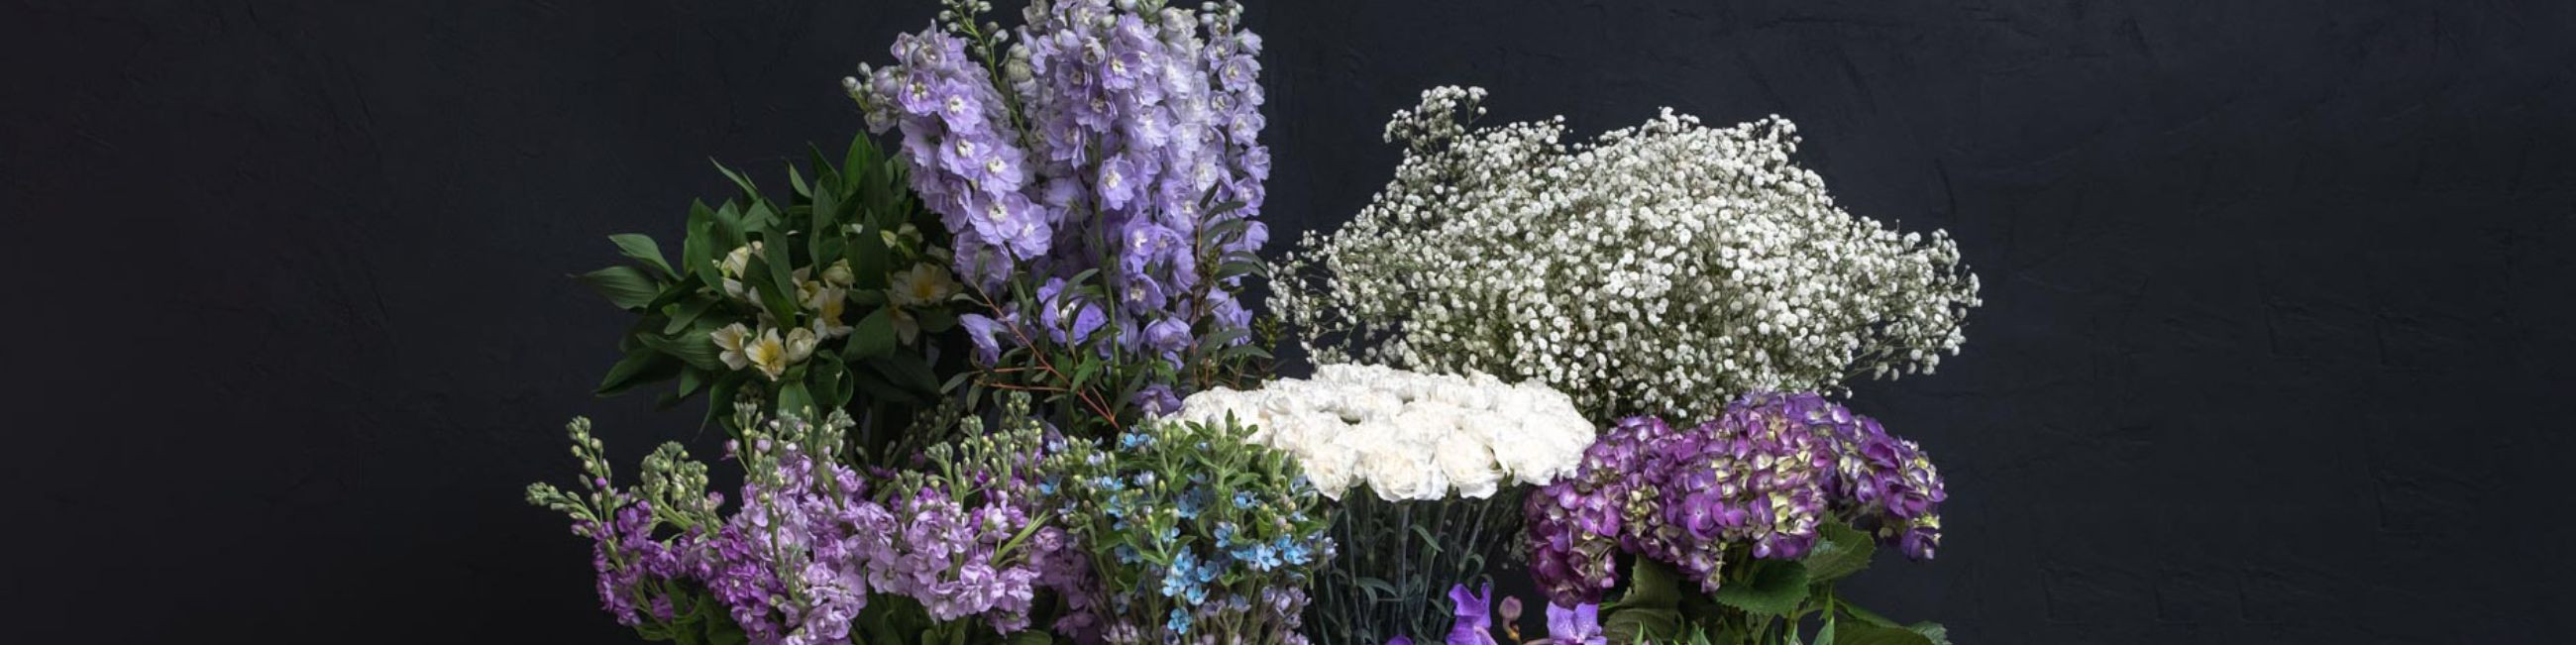 Leeri Lillesalong pakub kõike lilledega seonduvat alates 1999. aastast. Loome maine värvikatele lilleseadetele, mis sobivad ideaalselt igaks sündmuseks ja tähtpäevaks.